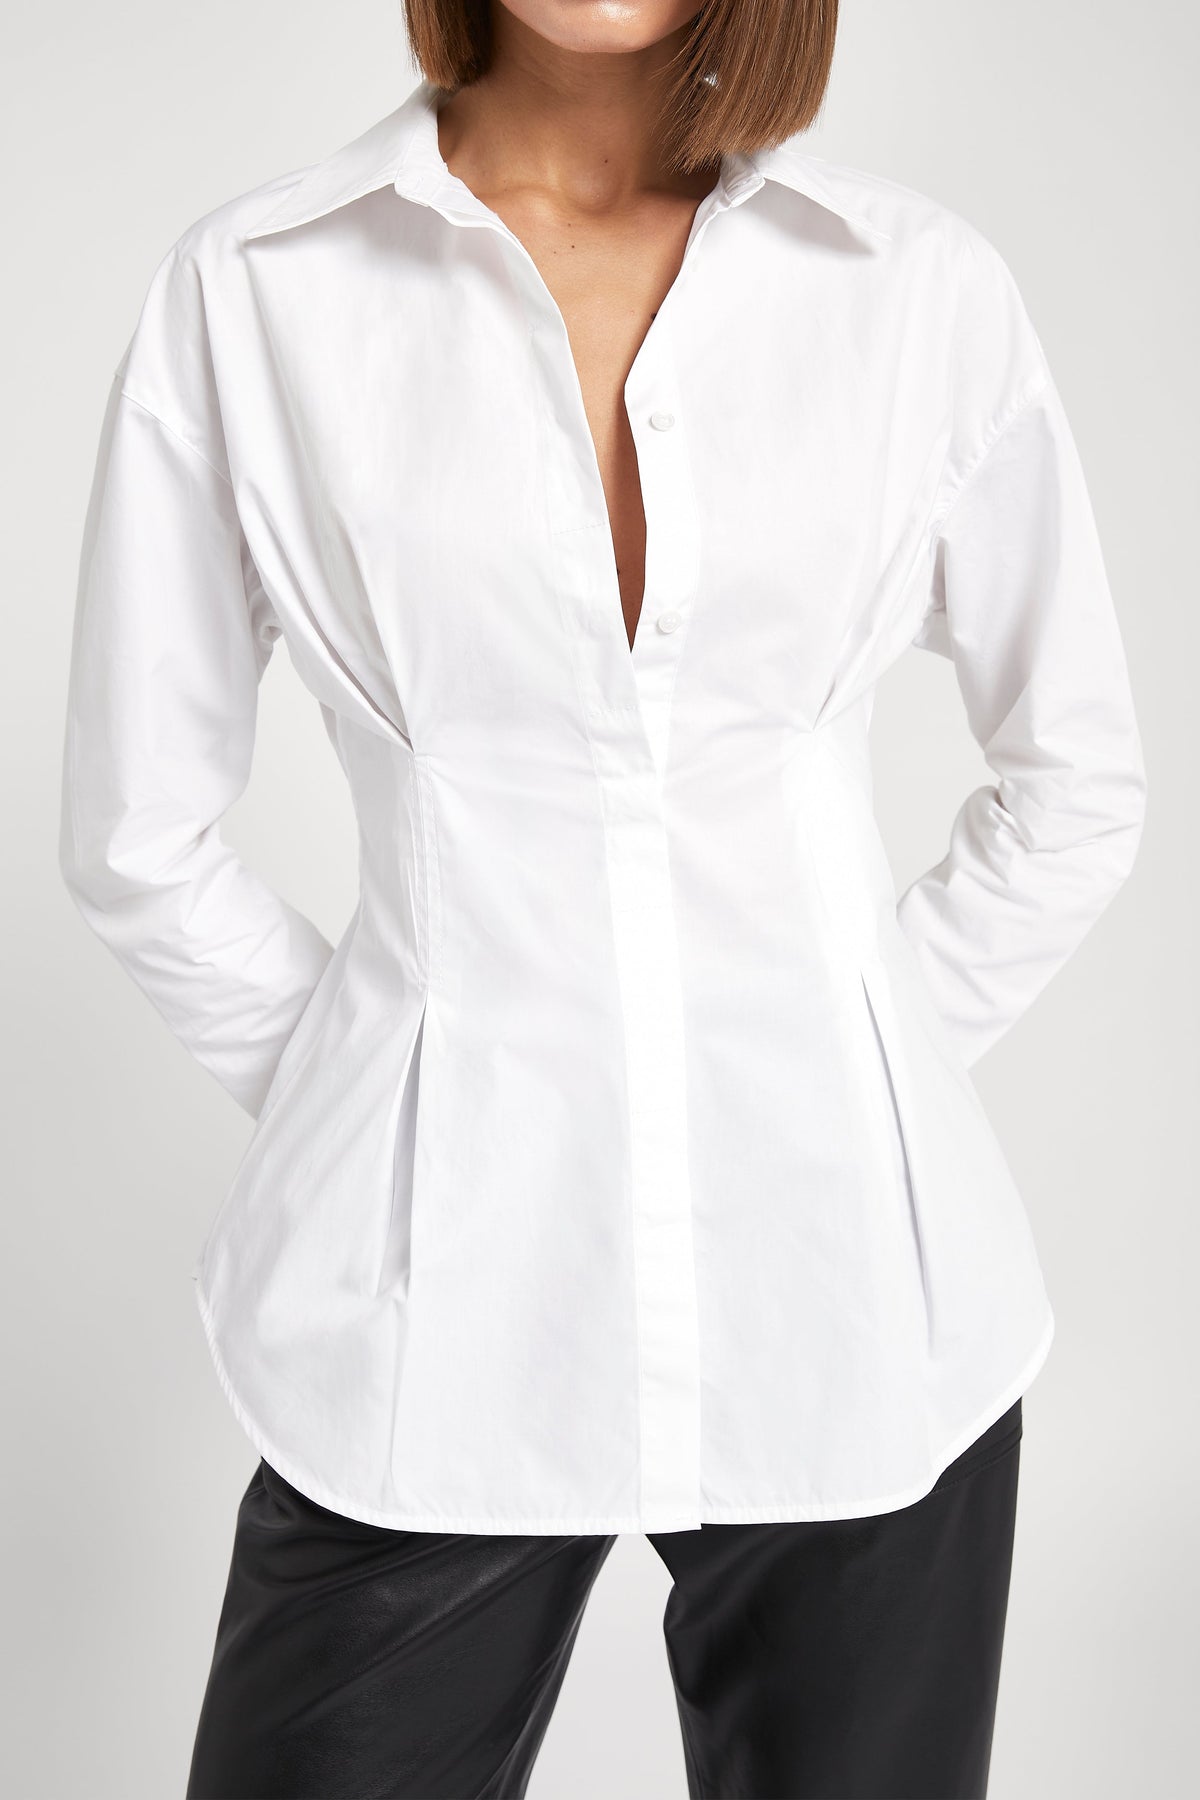 Hourglass Darted Shirt - White